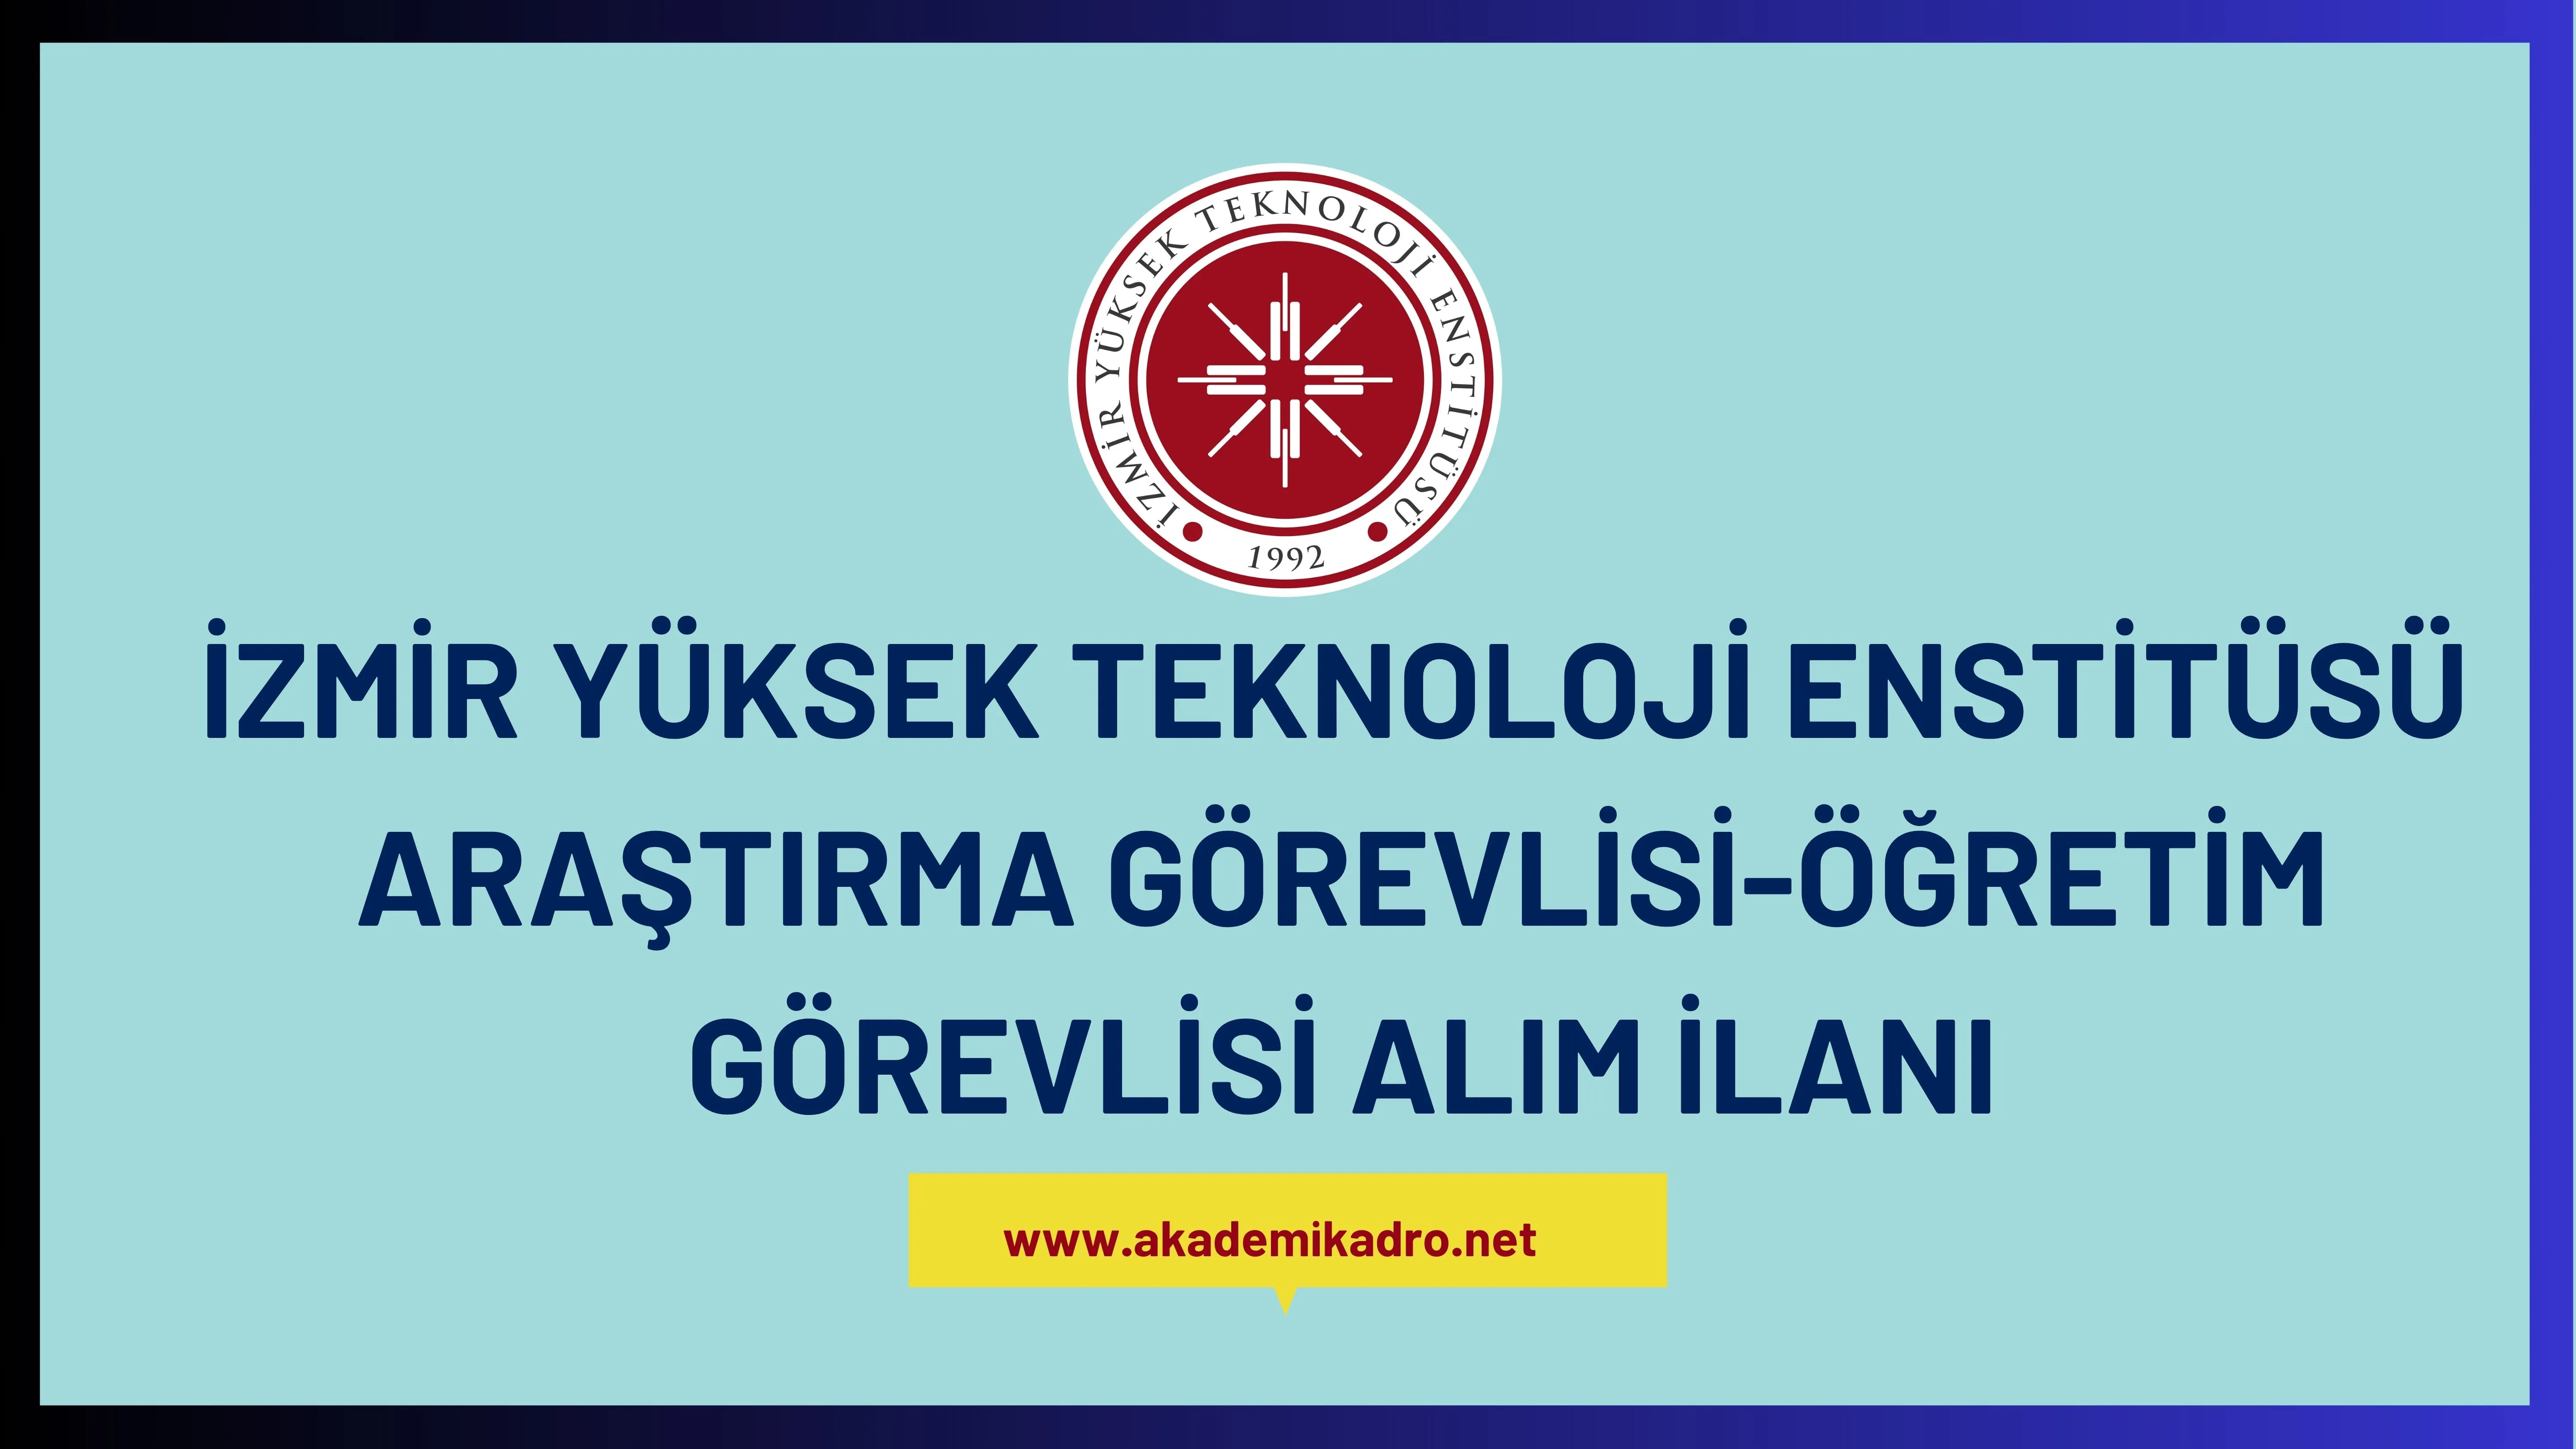 İzmir Yüksek Teknoloji Enstitüsü 16 Araştırma görevlisi ve 6 öğretim görevlisi alacaktır. Son başvuru tarihi 22 Ekim 2023